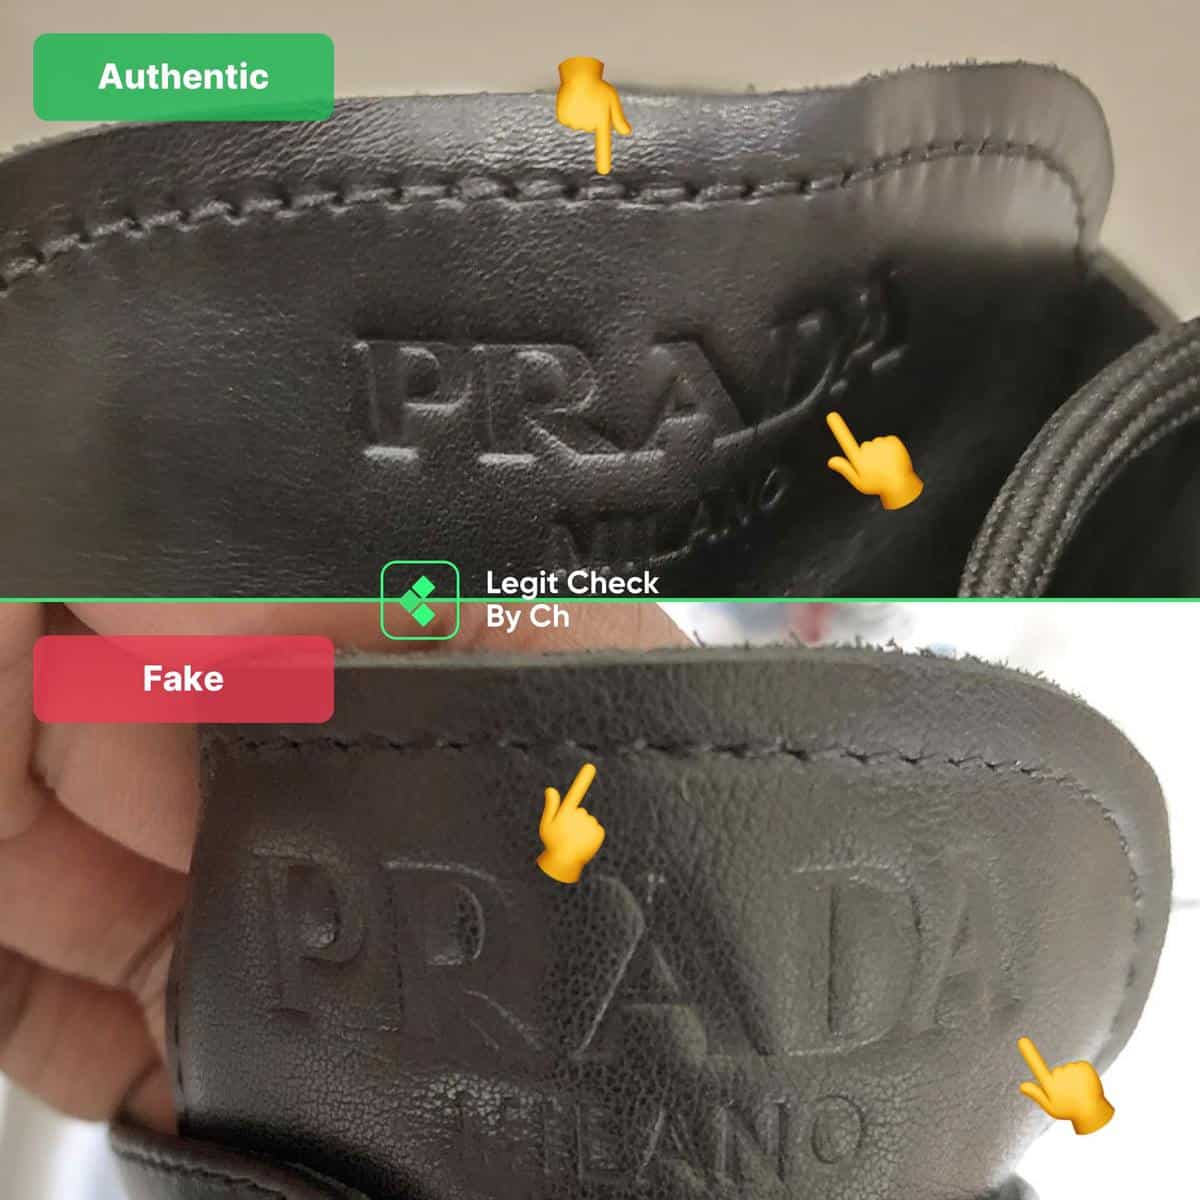 How to spot fake Pradas